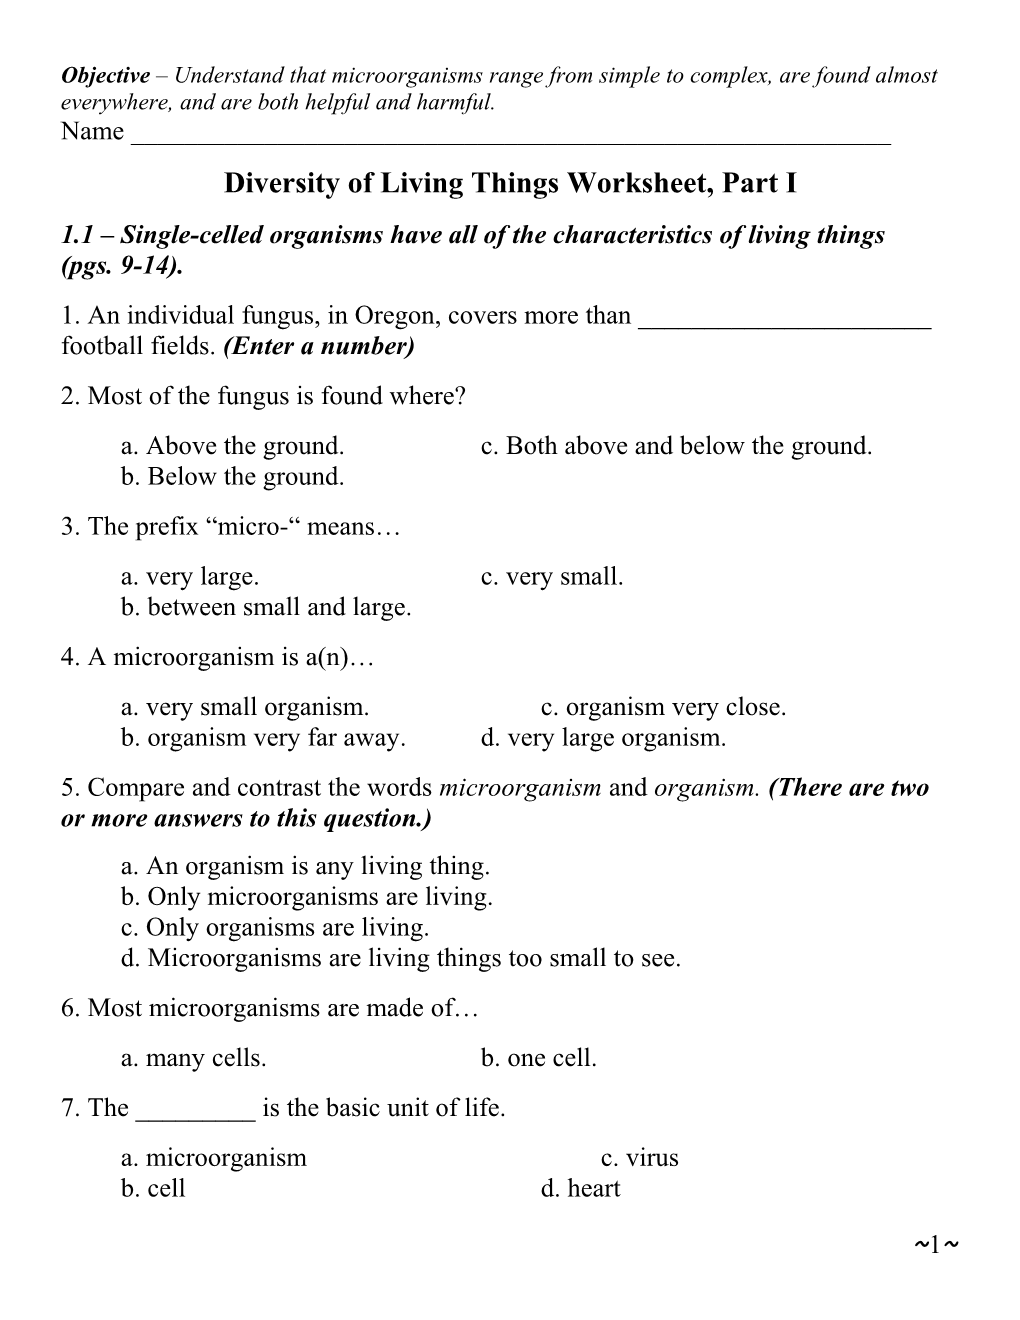 Diversity of Living Thingsworksheet, Part I